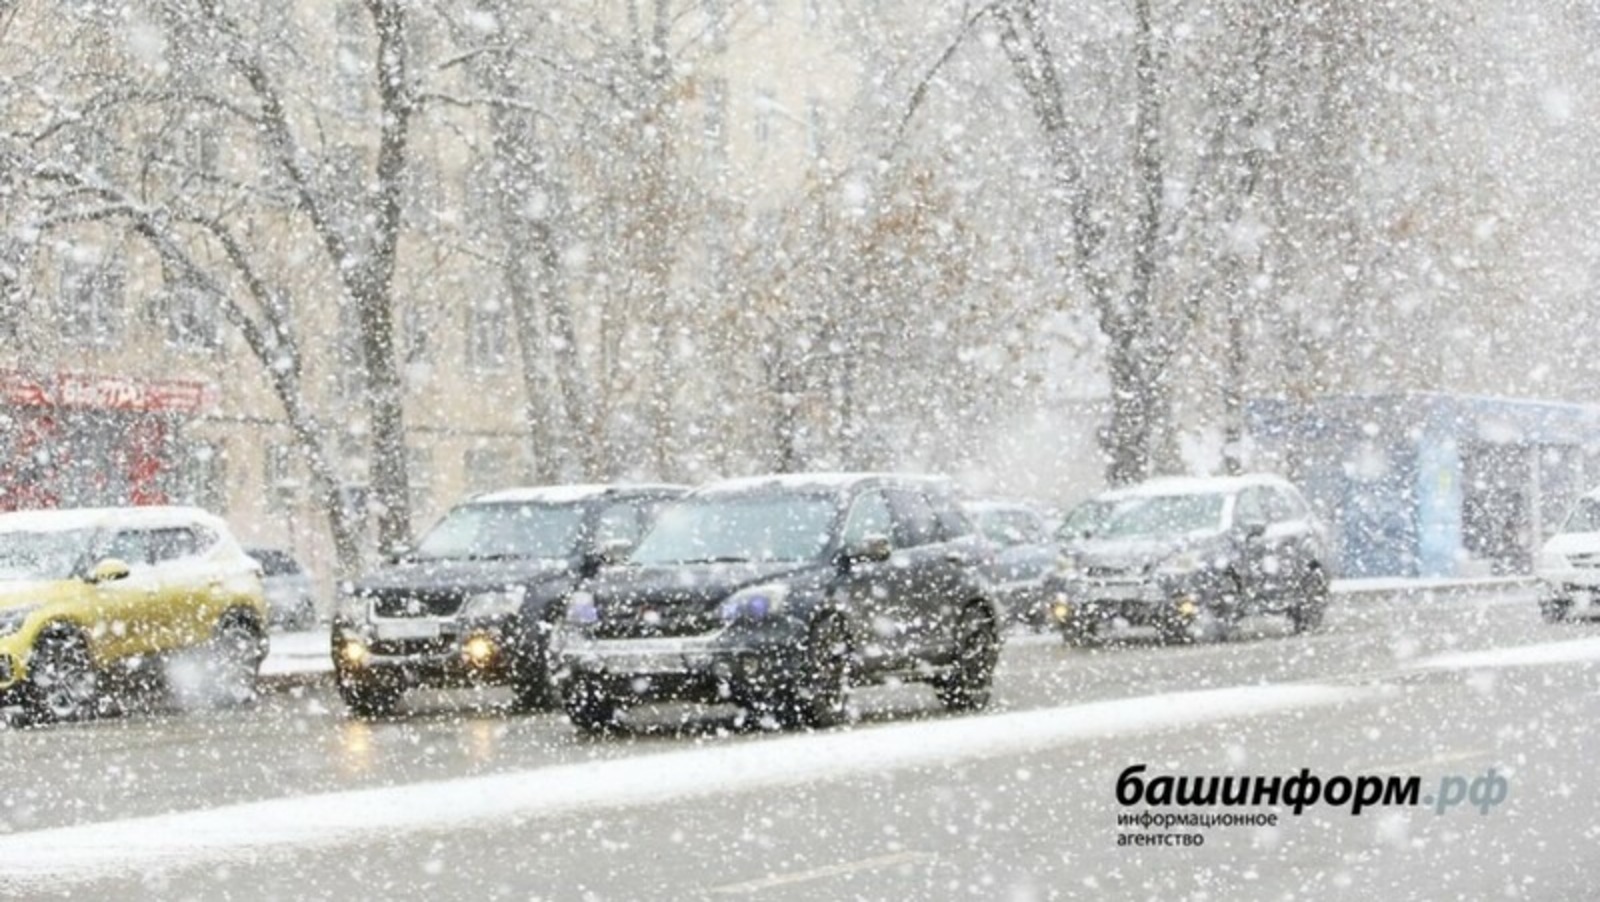 Жителей Башкирии предупреждают о крайне неблагоприятных погодных условиях сегодня и завтра